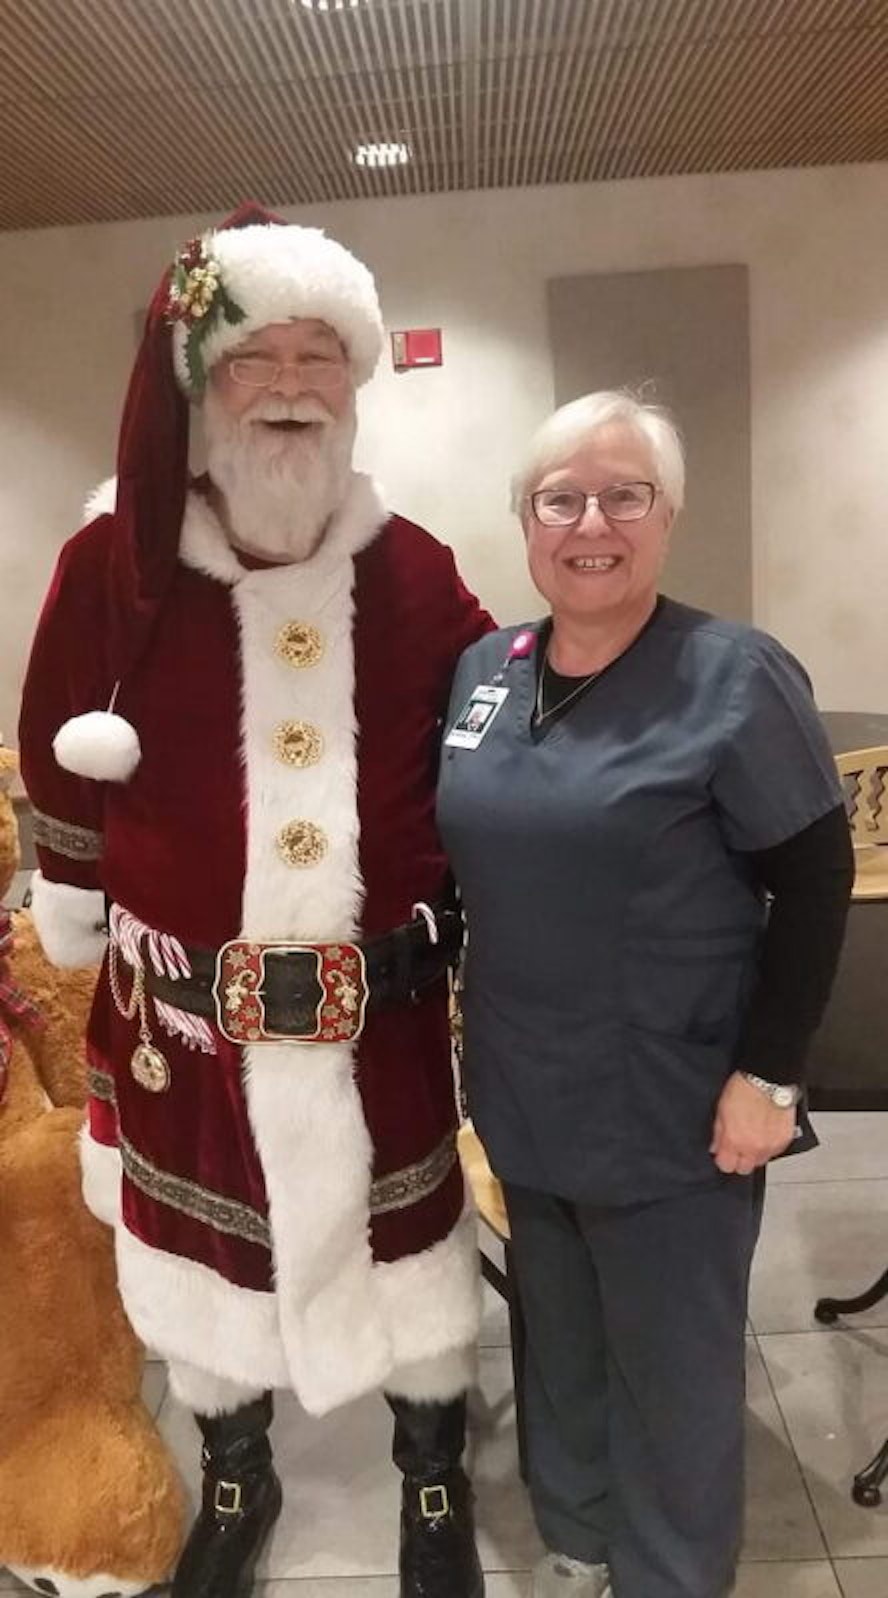 Besuch von Santa Claus bekam Andrea Evans in der US-Klinik, in der sie als Physikalisch-Technische Assistentin arbeitet.